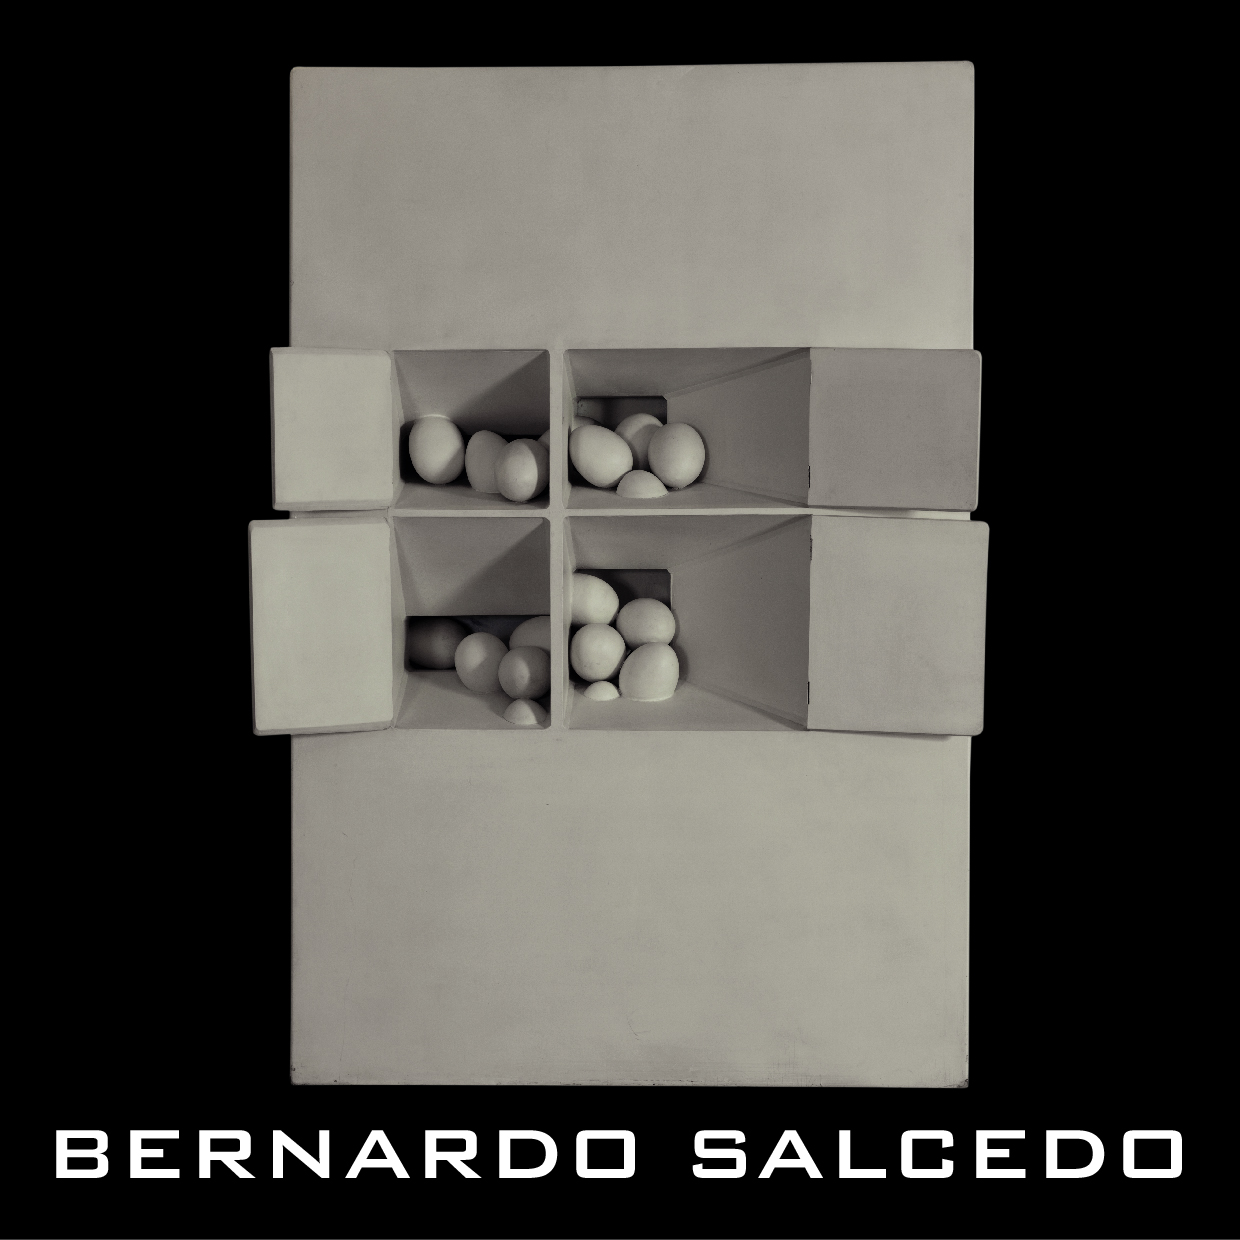 Bernardo Salcedo